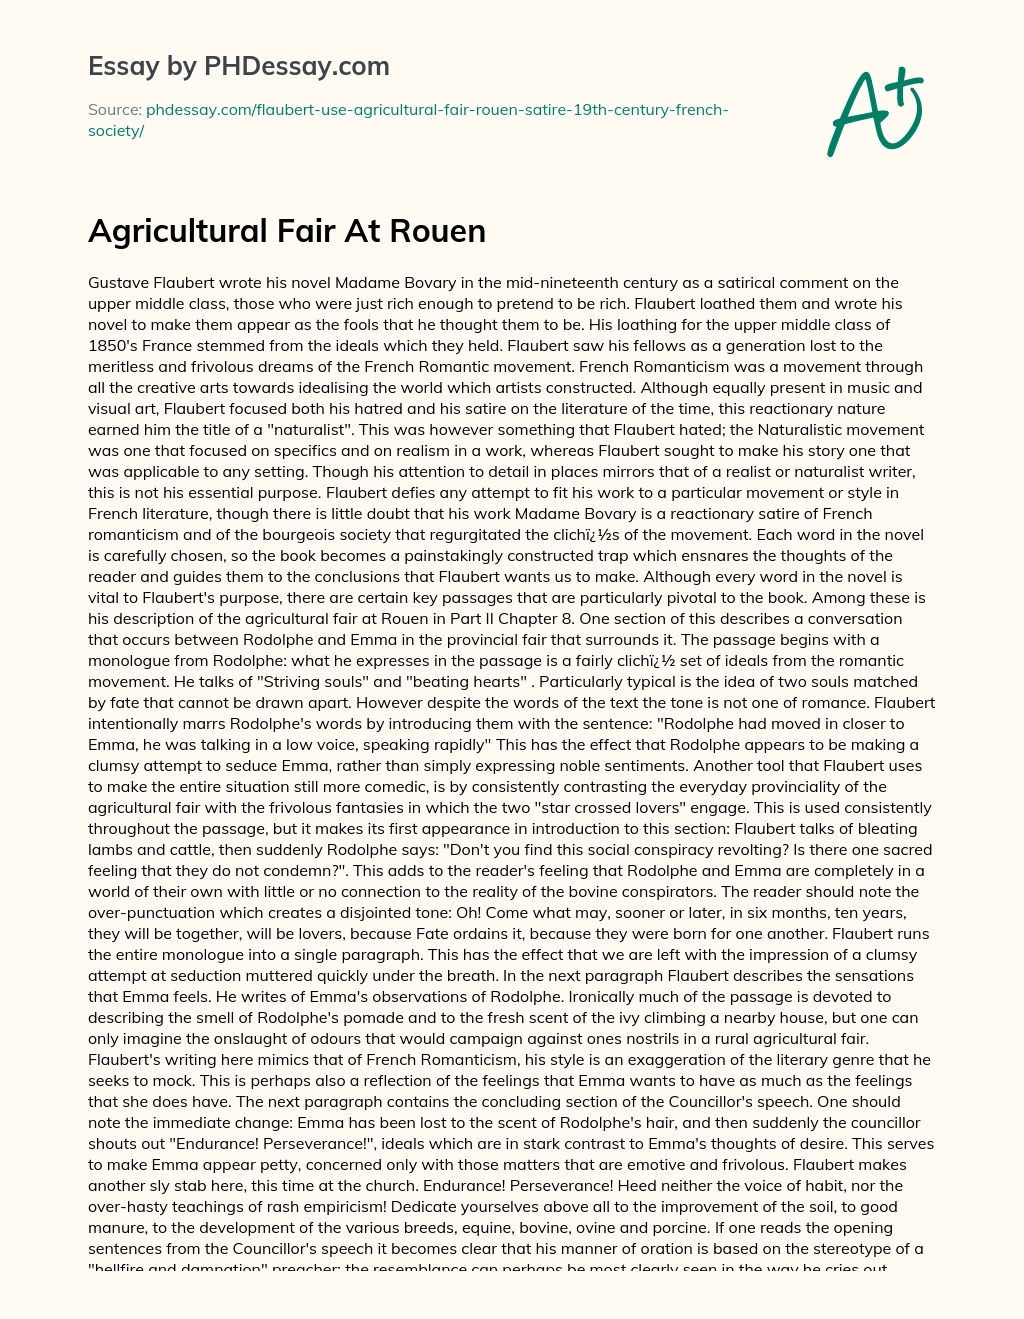 Agricultural Fair At Rouen essay